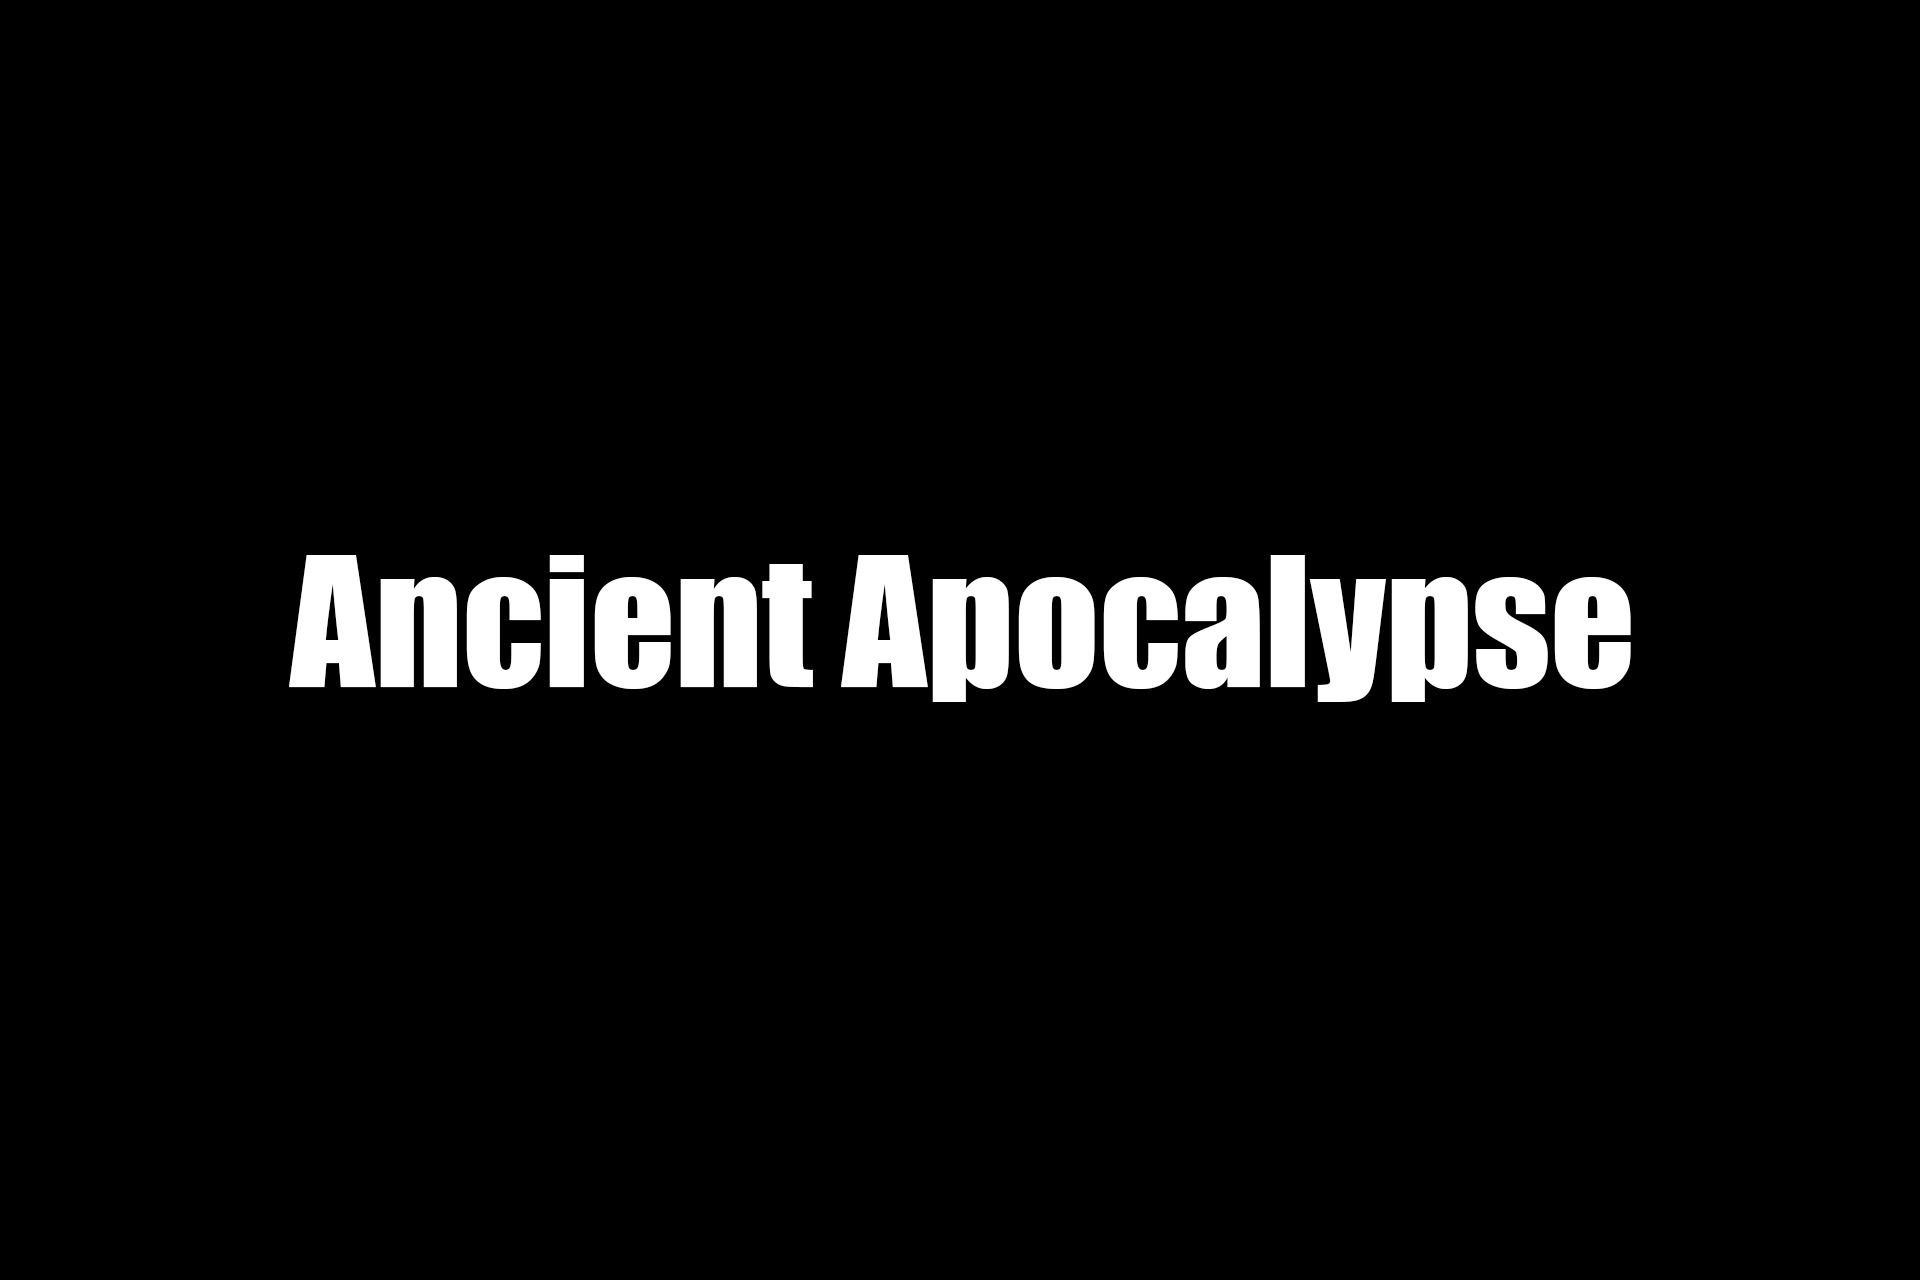 Ancient Apocalypse